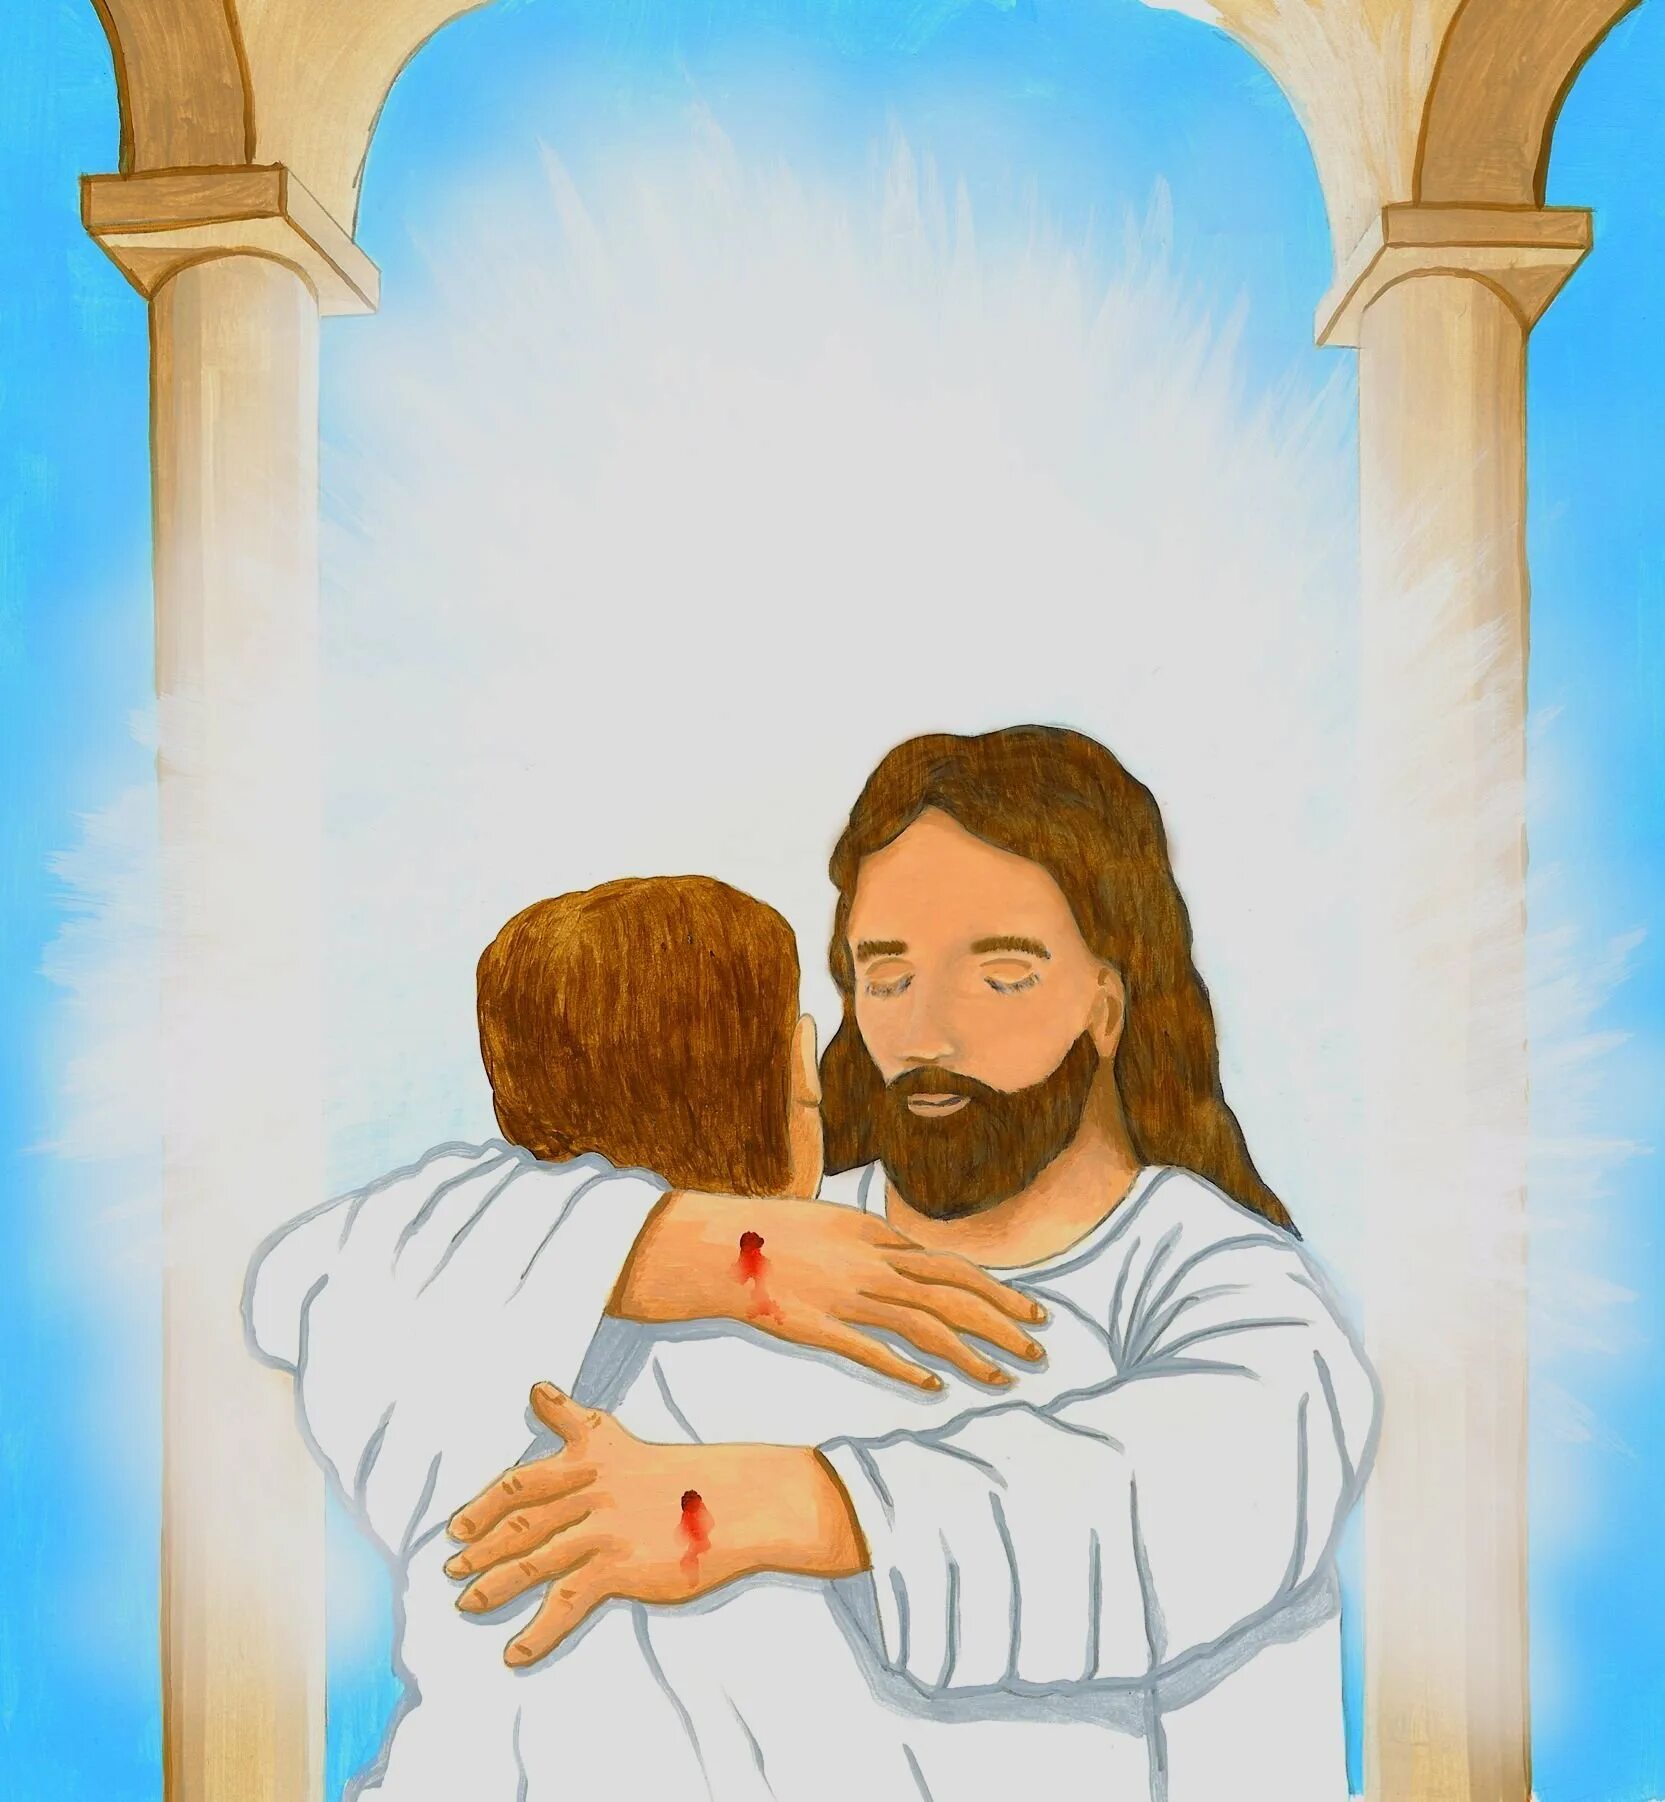 Иисус говорит с тобой. " Иисус. Бог и человек". ( Jesus).. Христианские иллюстрации. Встреча с Иисусом. Иисус любит тебя.